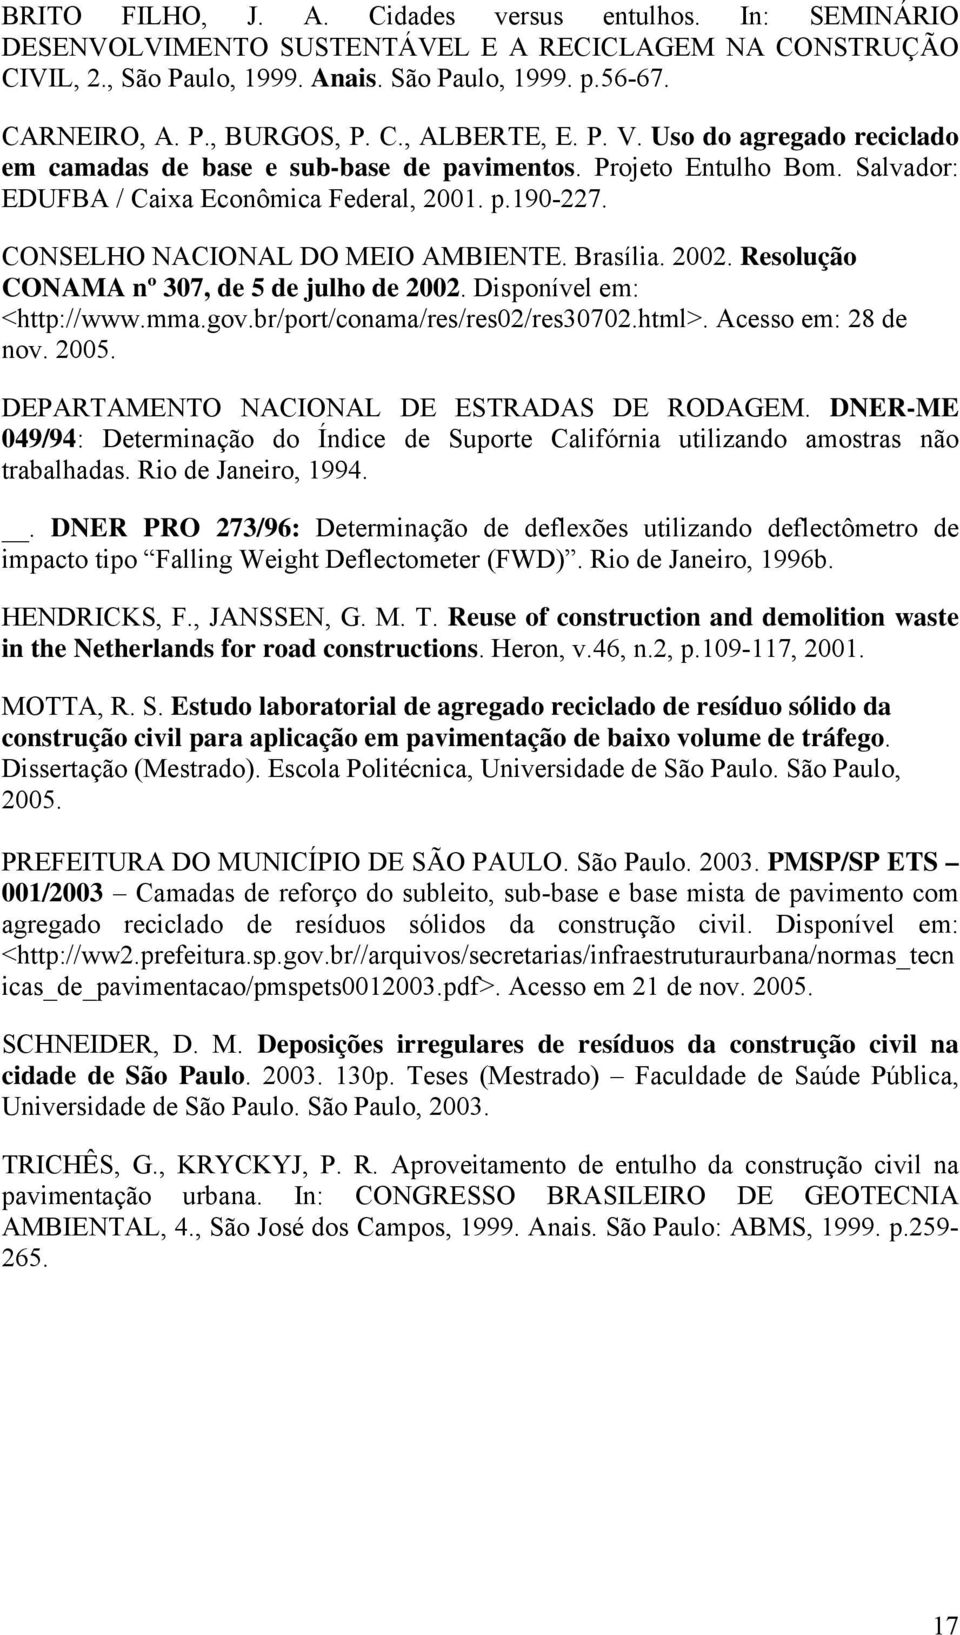 CONSELHO NACIONAL DO MEIO AMBIENTE. Brasília. 2002. Resolução CONAMA nº 307, de 5 de julho de 2002. Disponível em: <http://www.mma.gov.br/port/conama/res/res02/res30702.html>. Acesso em: 28 de nov.